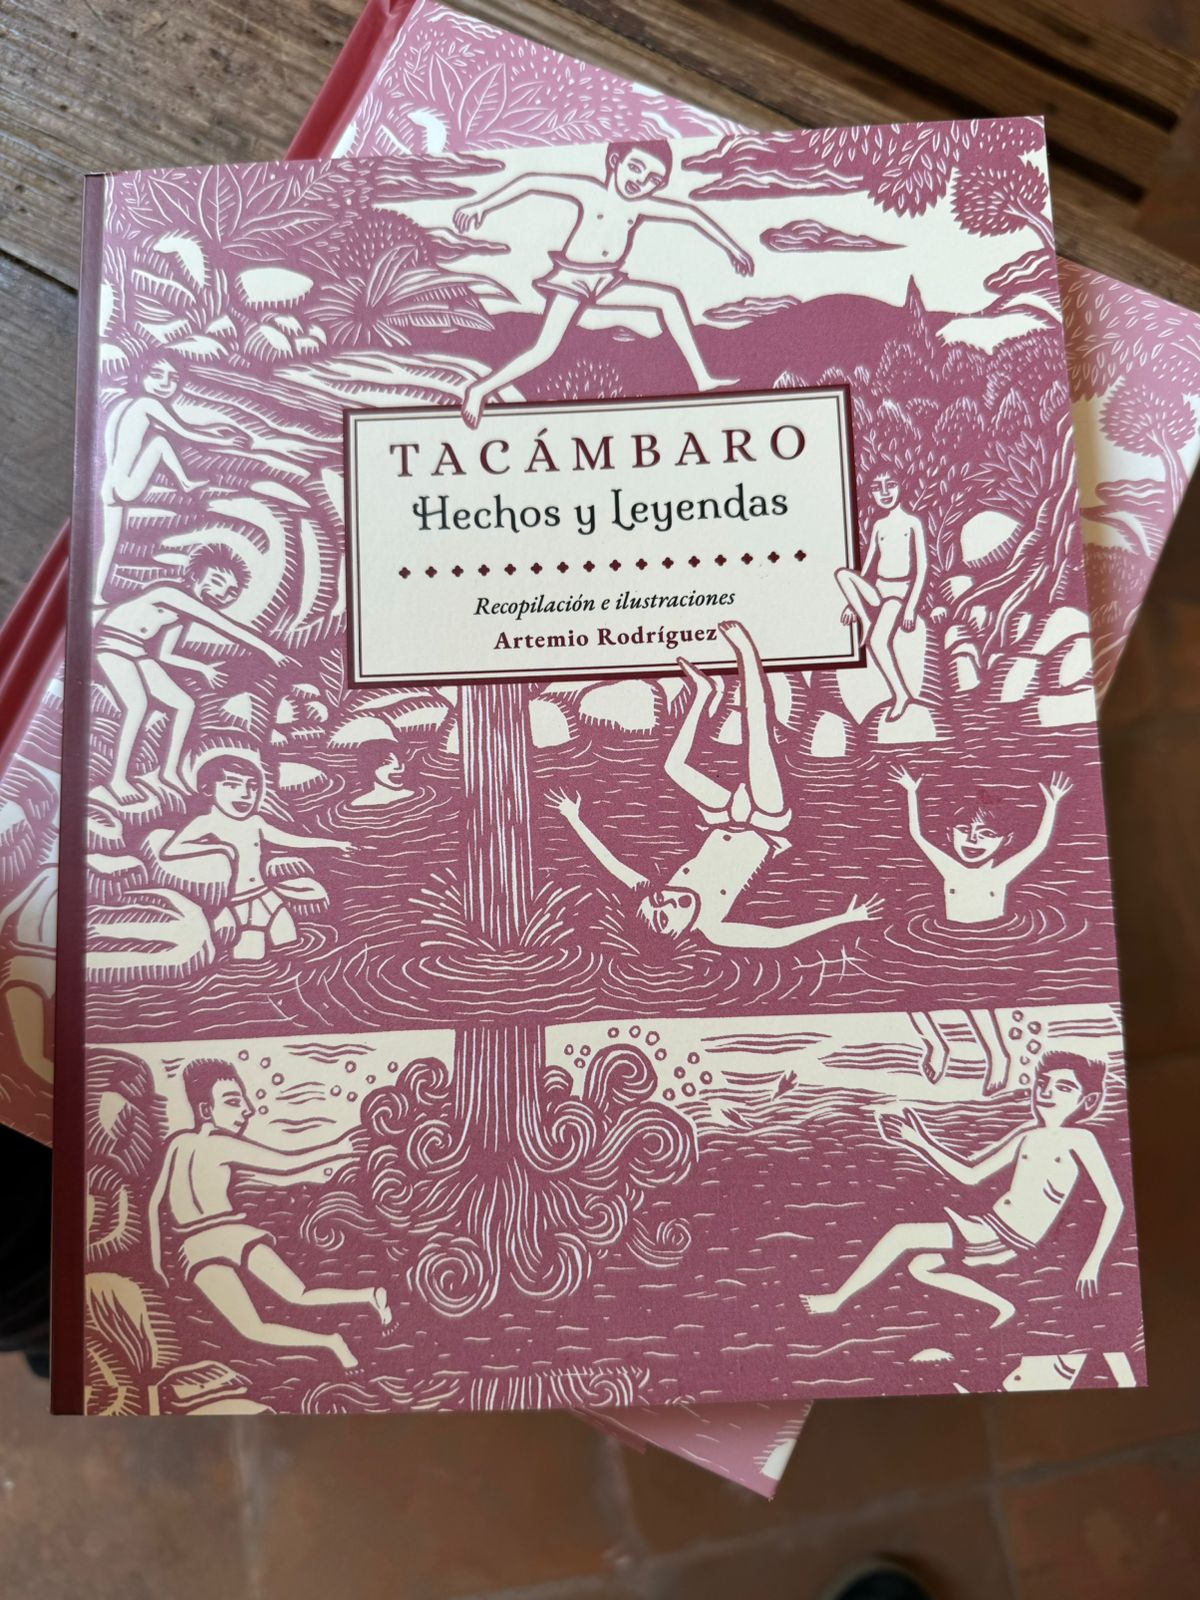 Presentan el libro “Tacámbaro, Hechos y Leyendas” del artista Artemio Rodríguez en Pátzcuaro